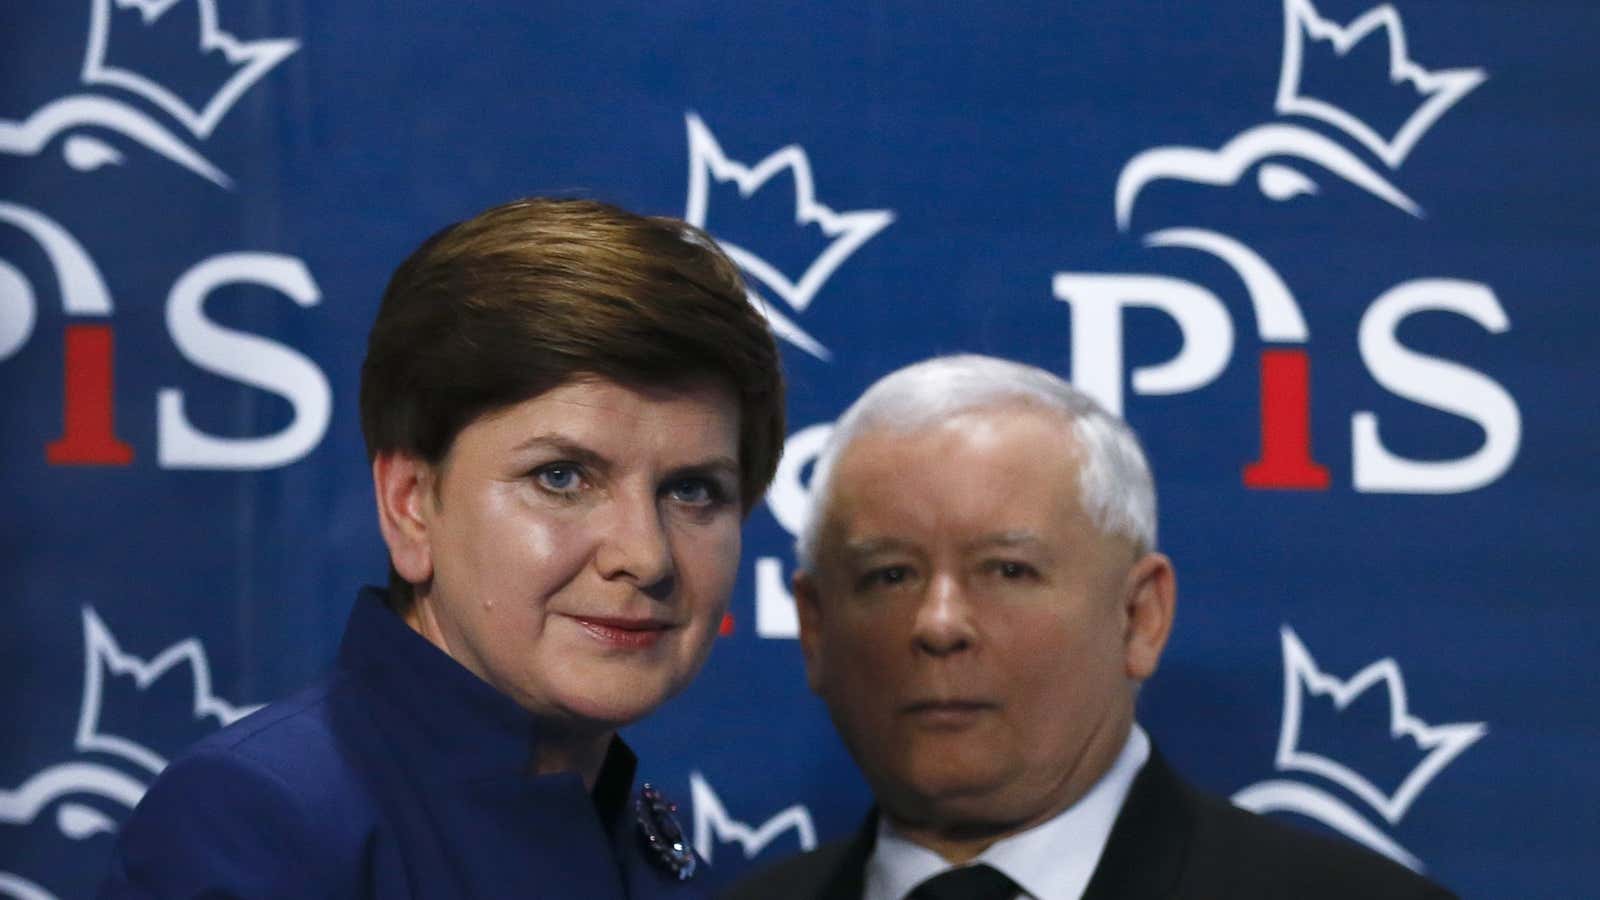 Beata Szydło, the new prime minister, and the éminence grise Jarosław Kaczyński.